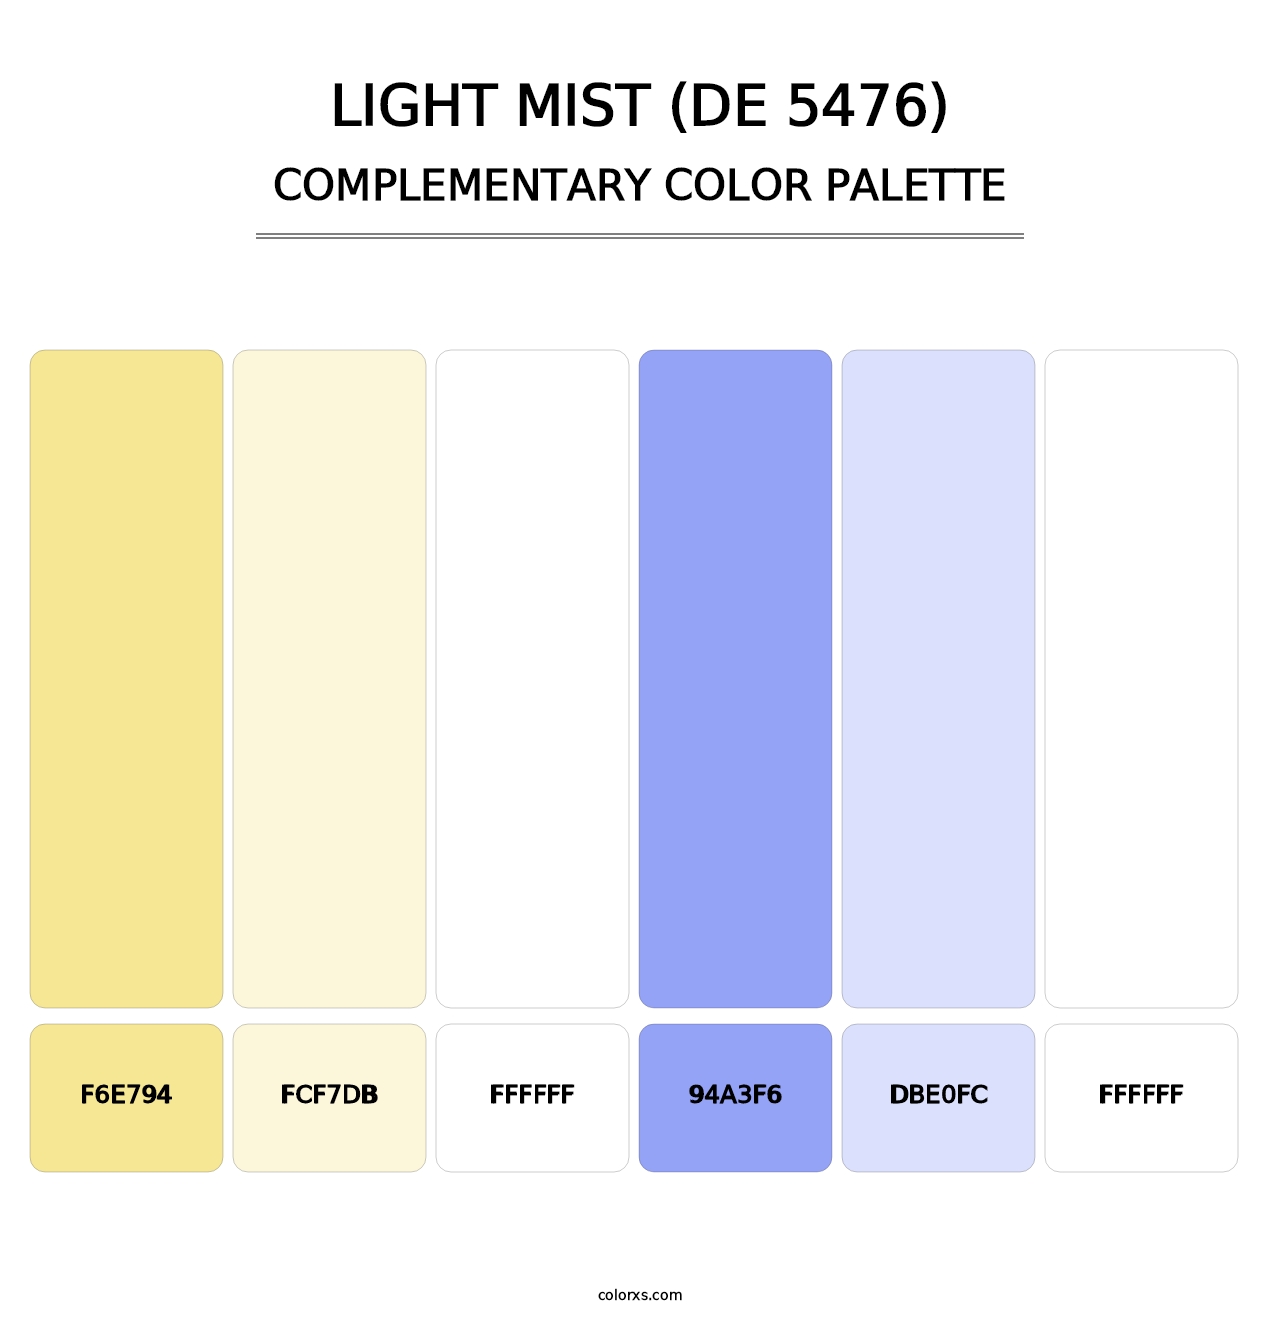 Light Mist (DE 5476) - Complementary Color Palette